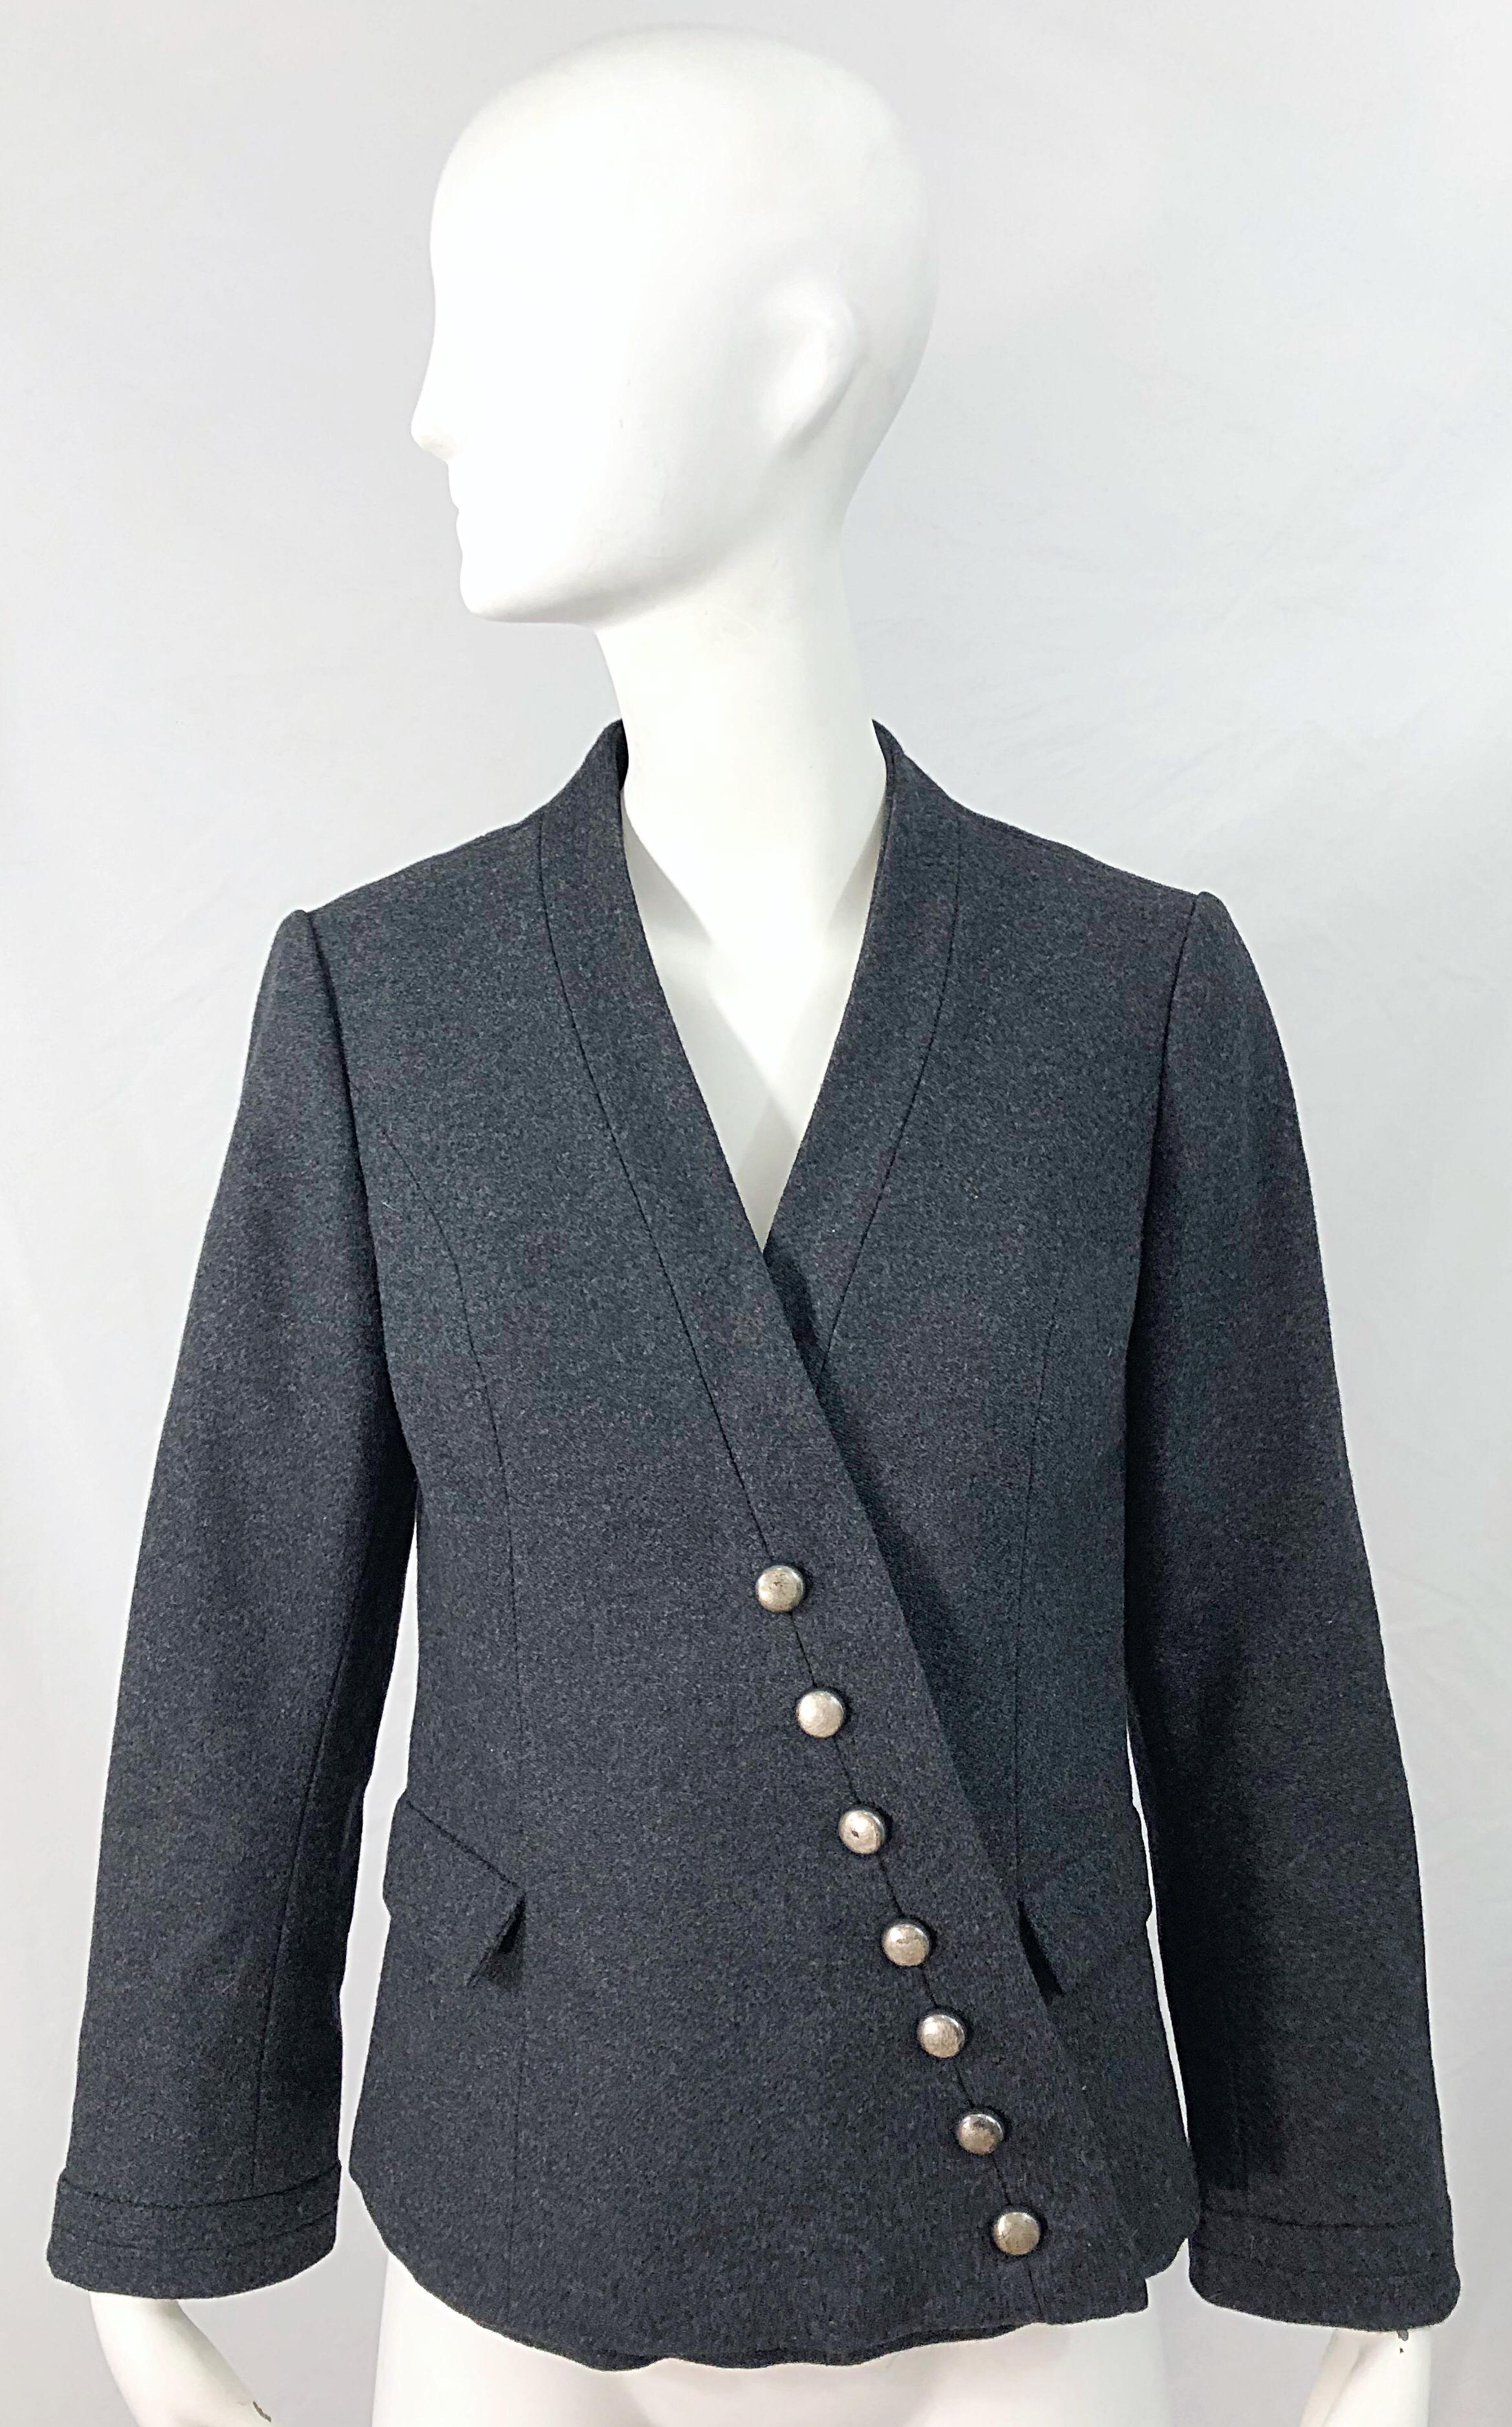 Die perfekte Jacke! Diese HELEN ROSE-Jacke aus der Mitte des 1950er-Jahrhunderts hat alles: Stil, Funktionalität, Wärme, usw.! Perfekte Alternative zu einer schwarzen Jacke. Weiche Wolle, die sich für jede Jahreszeit eignet. Knöpfe aus poliertem